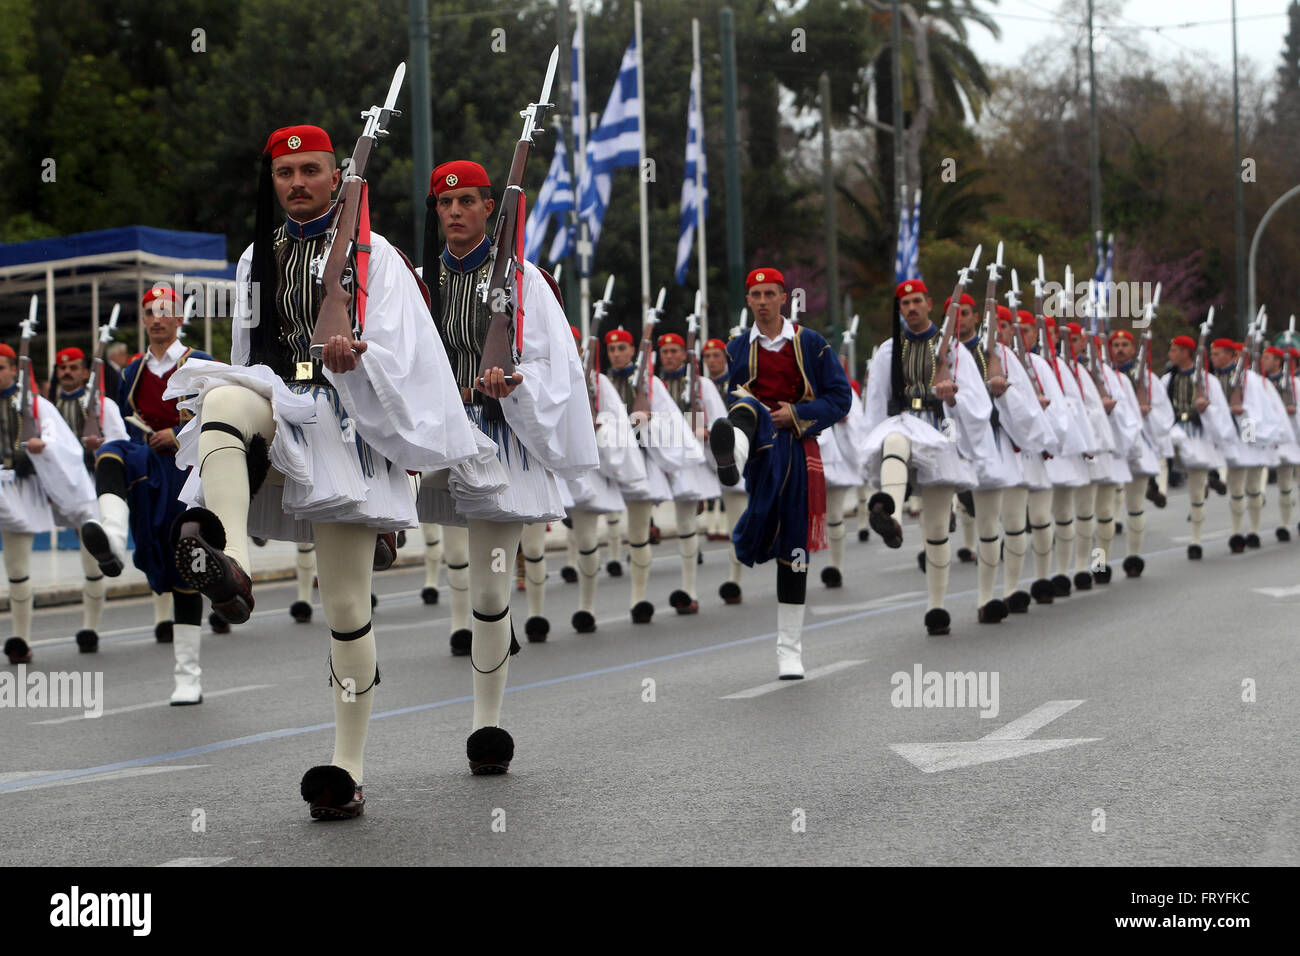 (160325)--Athen, 25. März 2016 (Xinhua)--griechische Armee Soldaten nehmen Sie Teil an der Independence Day Parade in Athen, Griechenland, am 25. März 2016. Die Unabhängigkeit-Tag markiert den Beginn der griechischen Revolution gegen die osmanische Herrschaft im Jahre 1821. (Xinhua/Marios Lolos) Stockfoto